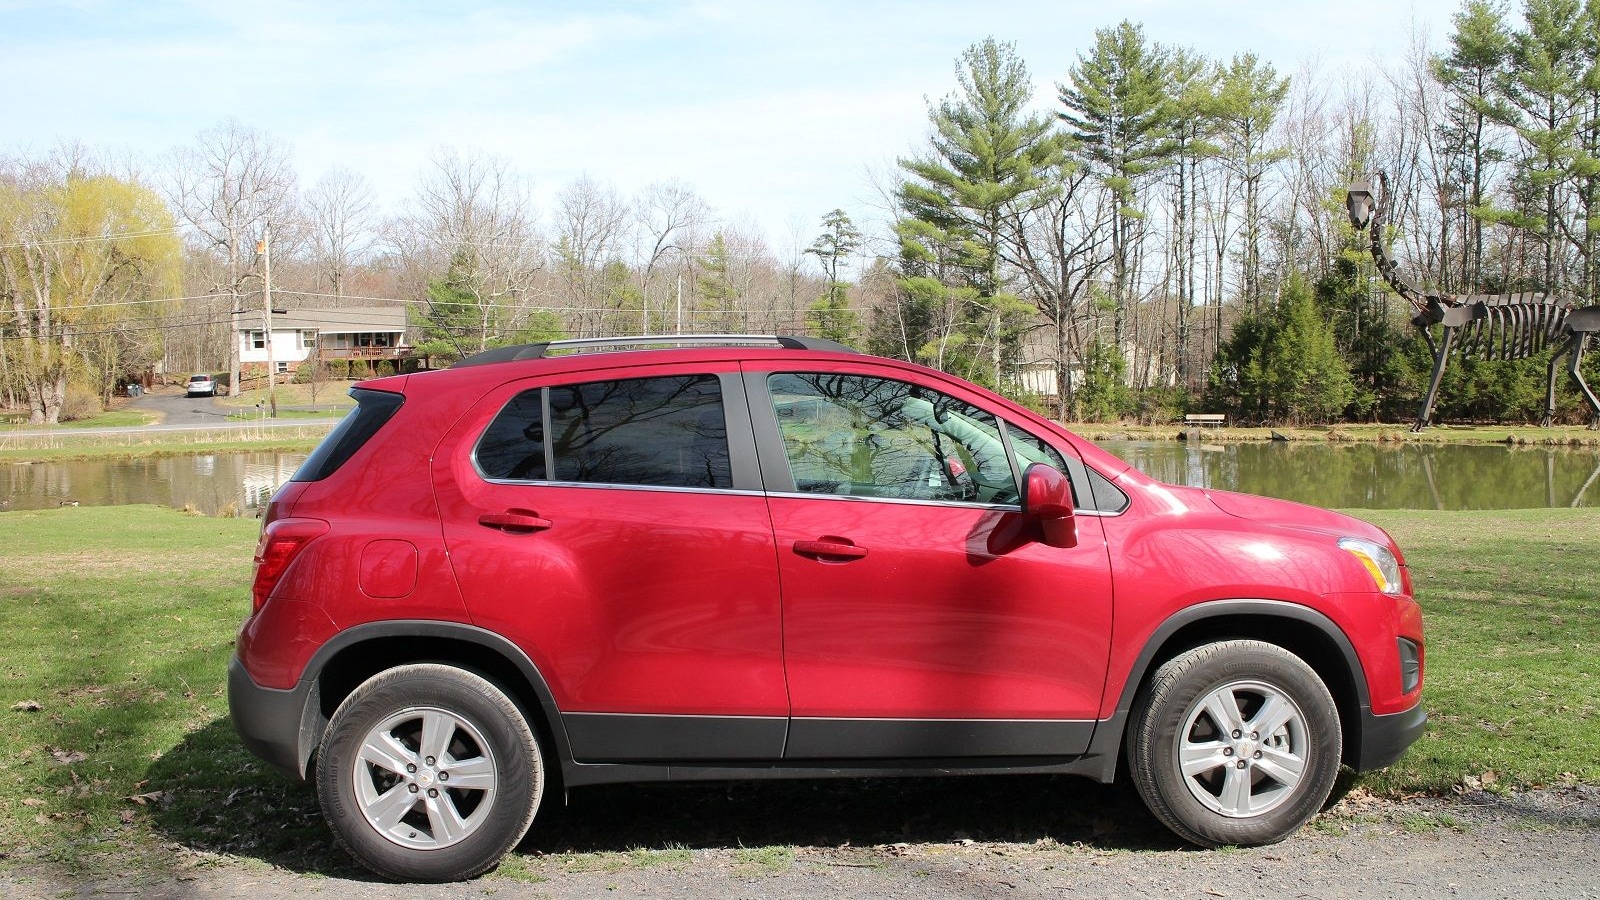 2015 Chevrolet Trax LT AWD, Catskill Mountains, NY, Apr 2015